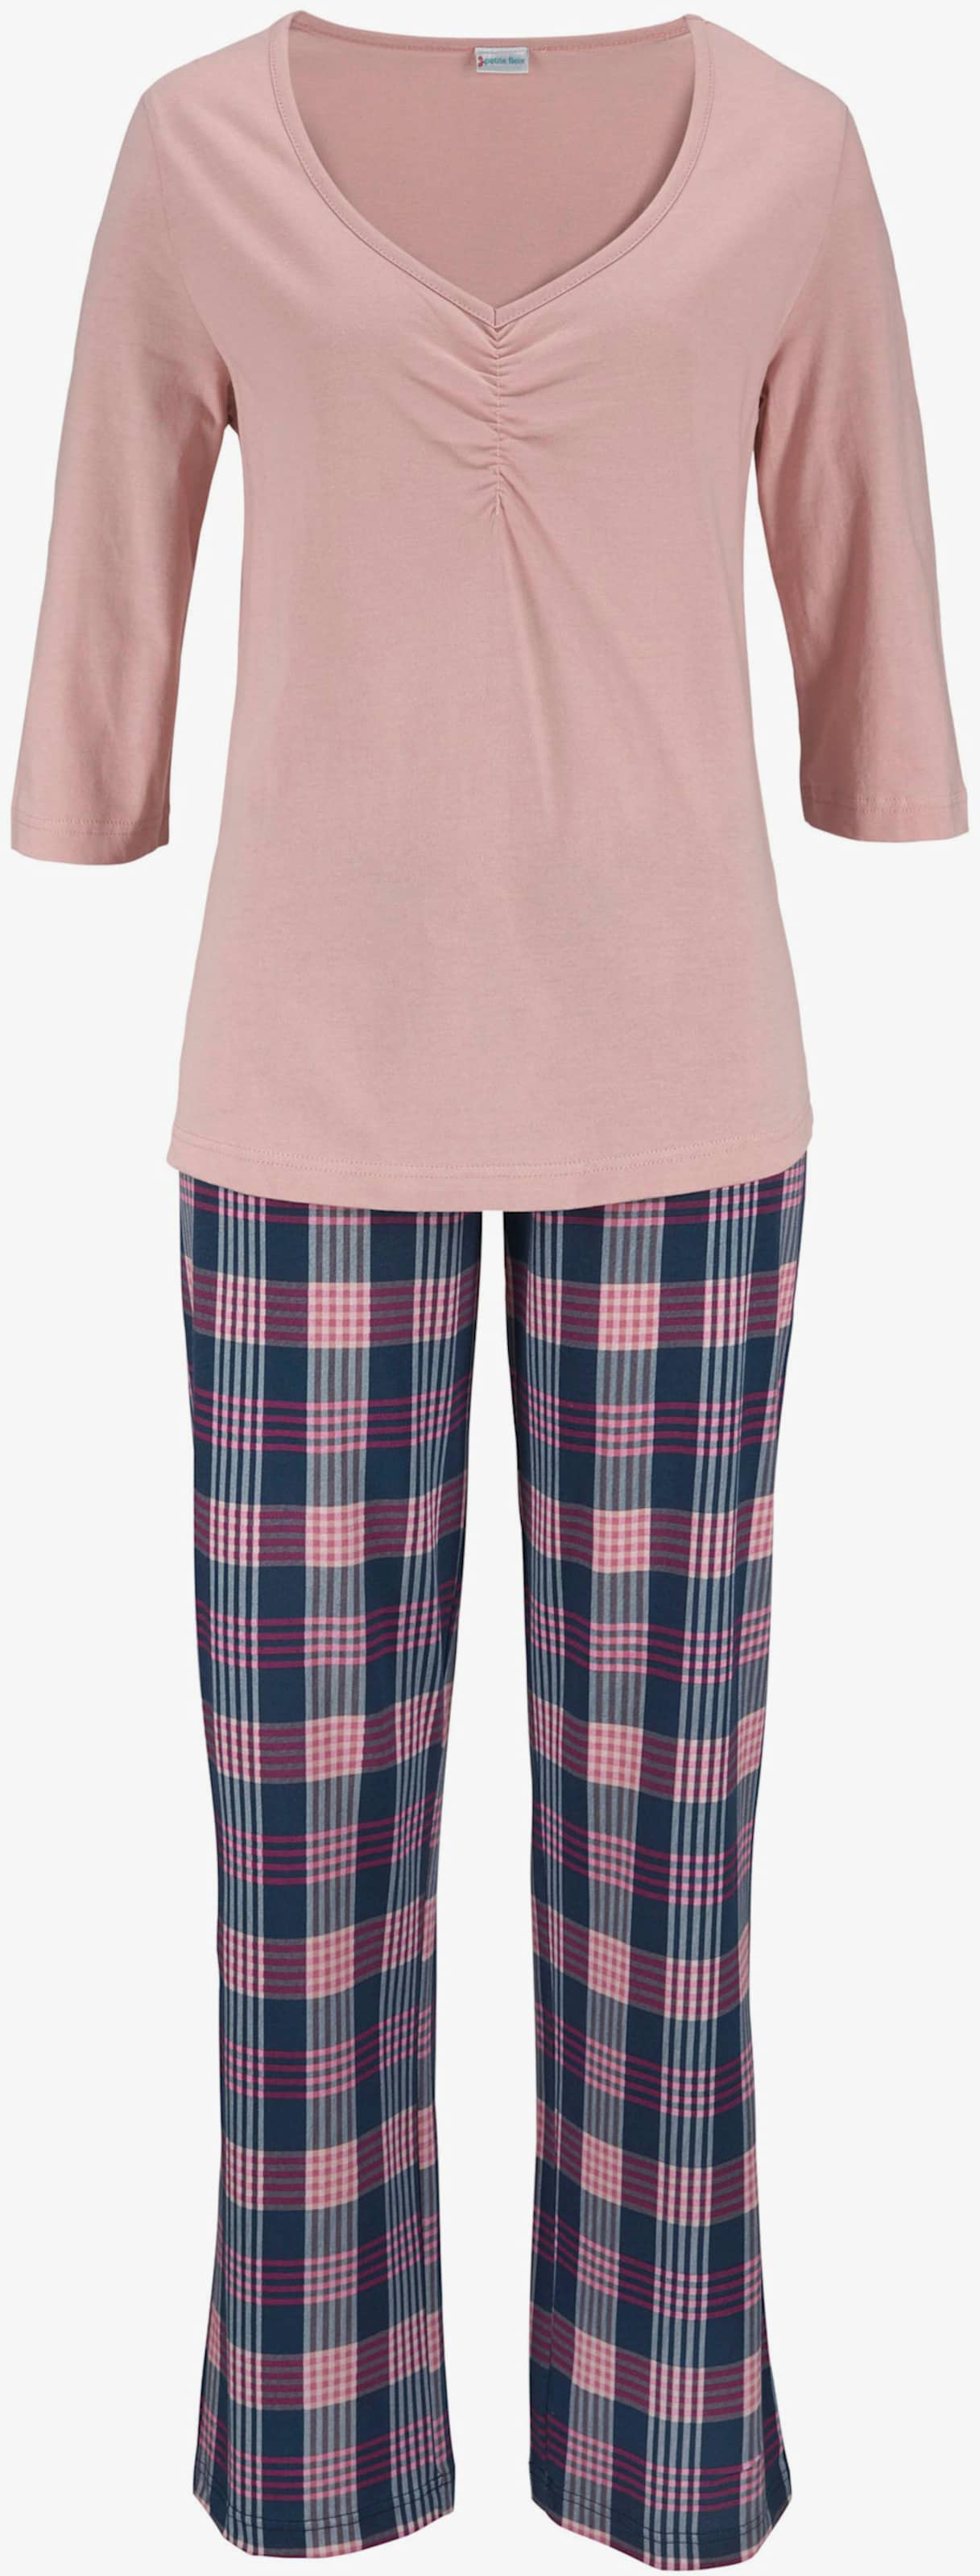 Vivance Dreams Pyjama - roze geruit, bordeaux geruit